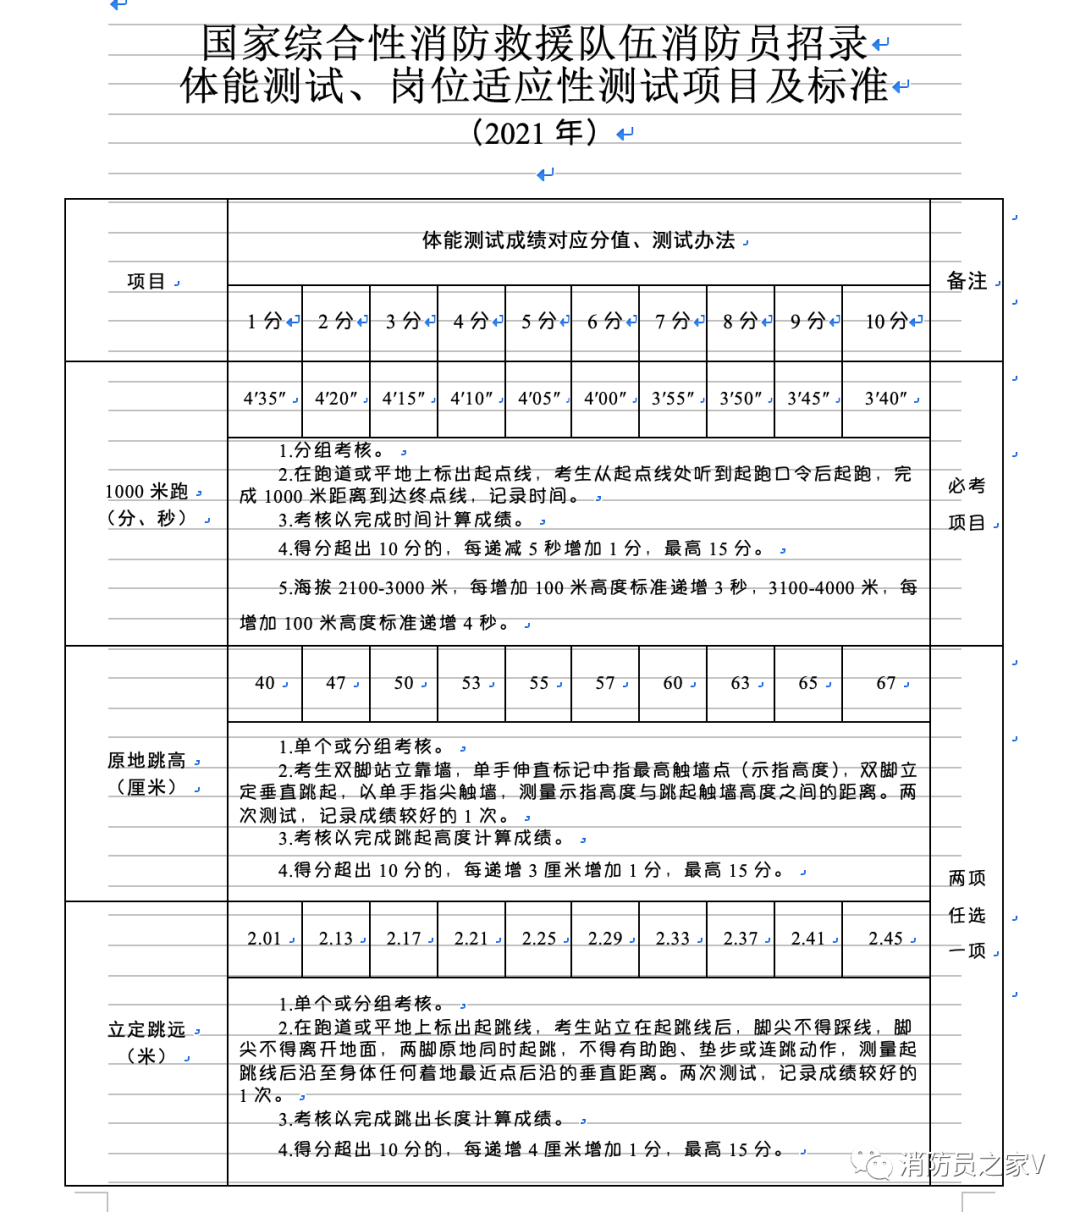 2．沧州初中毕业证发证时间：提前一学期就读职业学校能拿到初中毕业证吗？ 